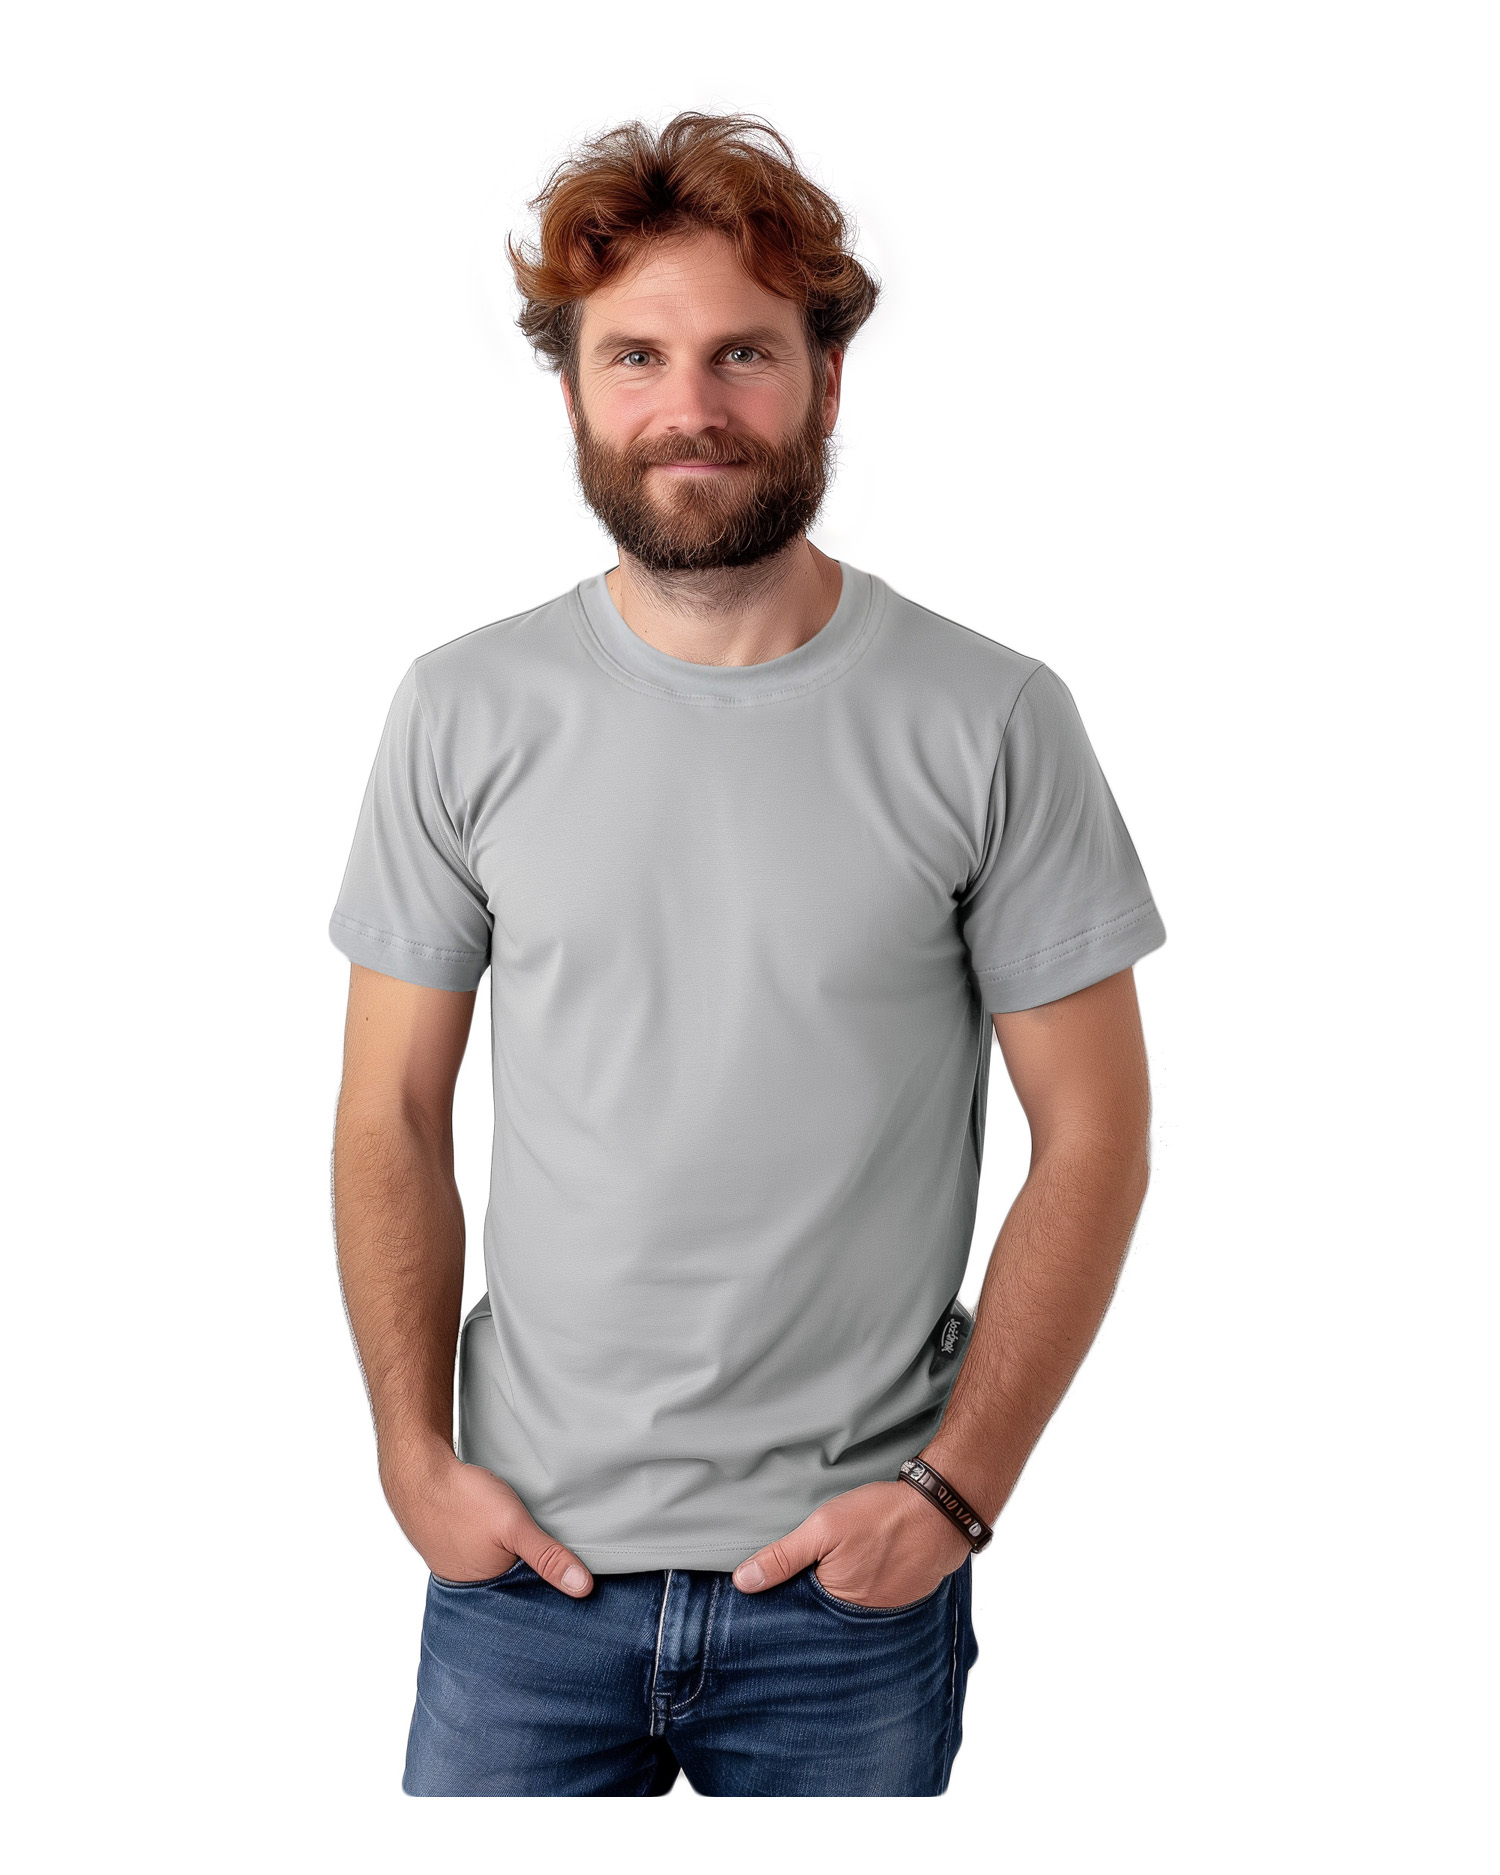 Pánske tričko Marek, krátky rukáv, olivové